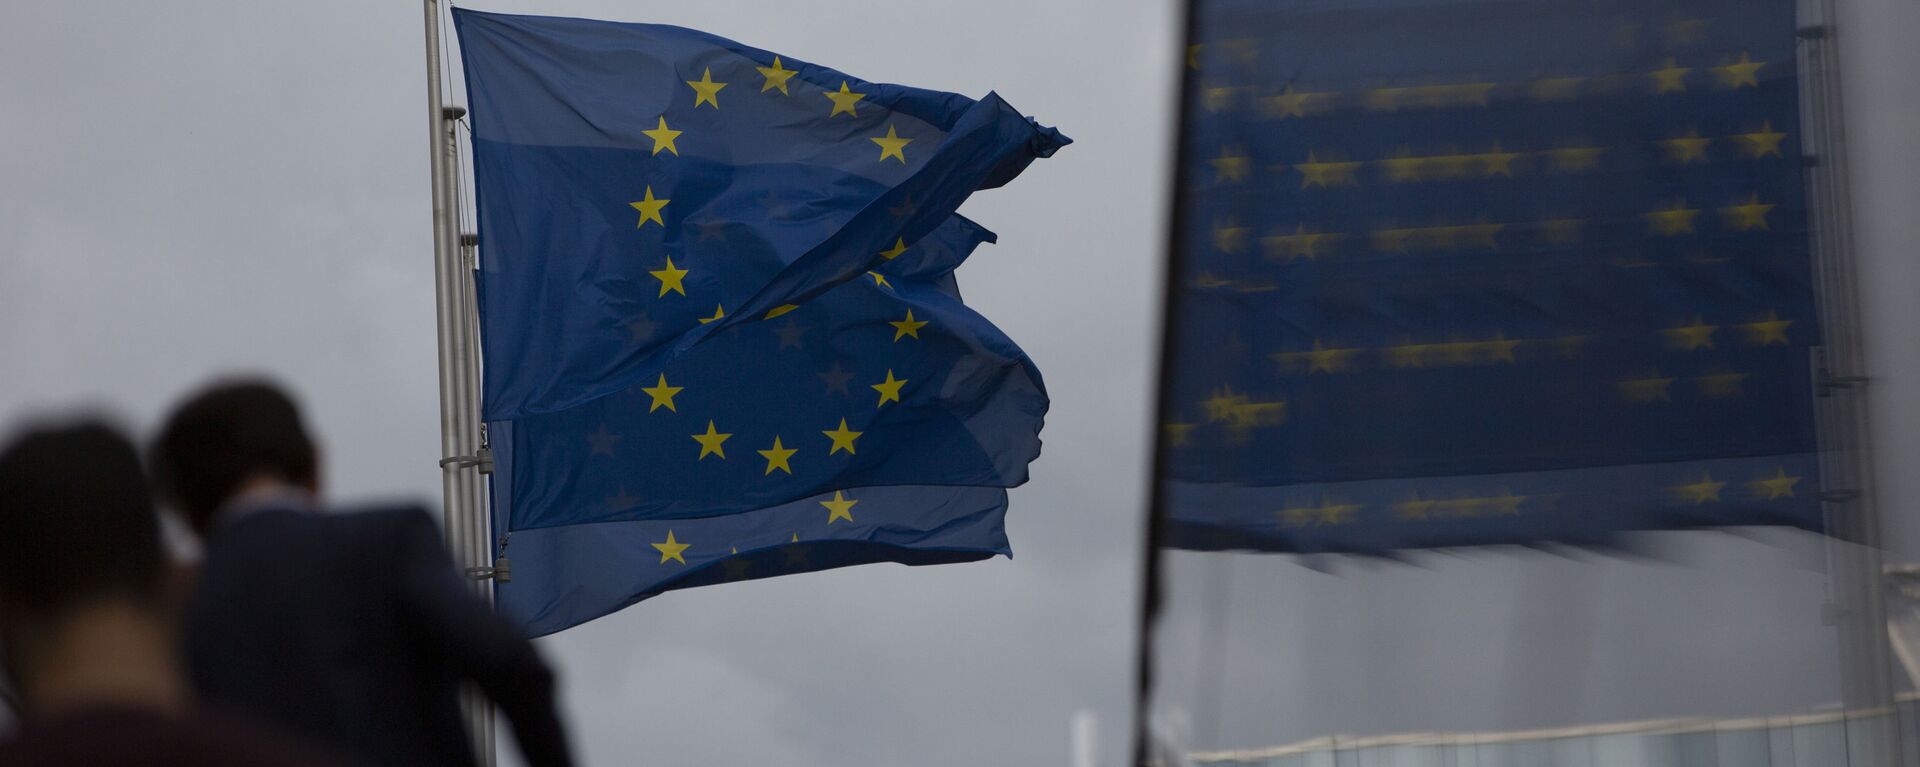 Флаги Европейского Союза развеваются на ветру, когда два человека поднимаются по лестнице возле штаб-квартиры ЕС в Брюсселе - Sputnik Azərbaycan, 1920, 27.01.2021